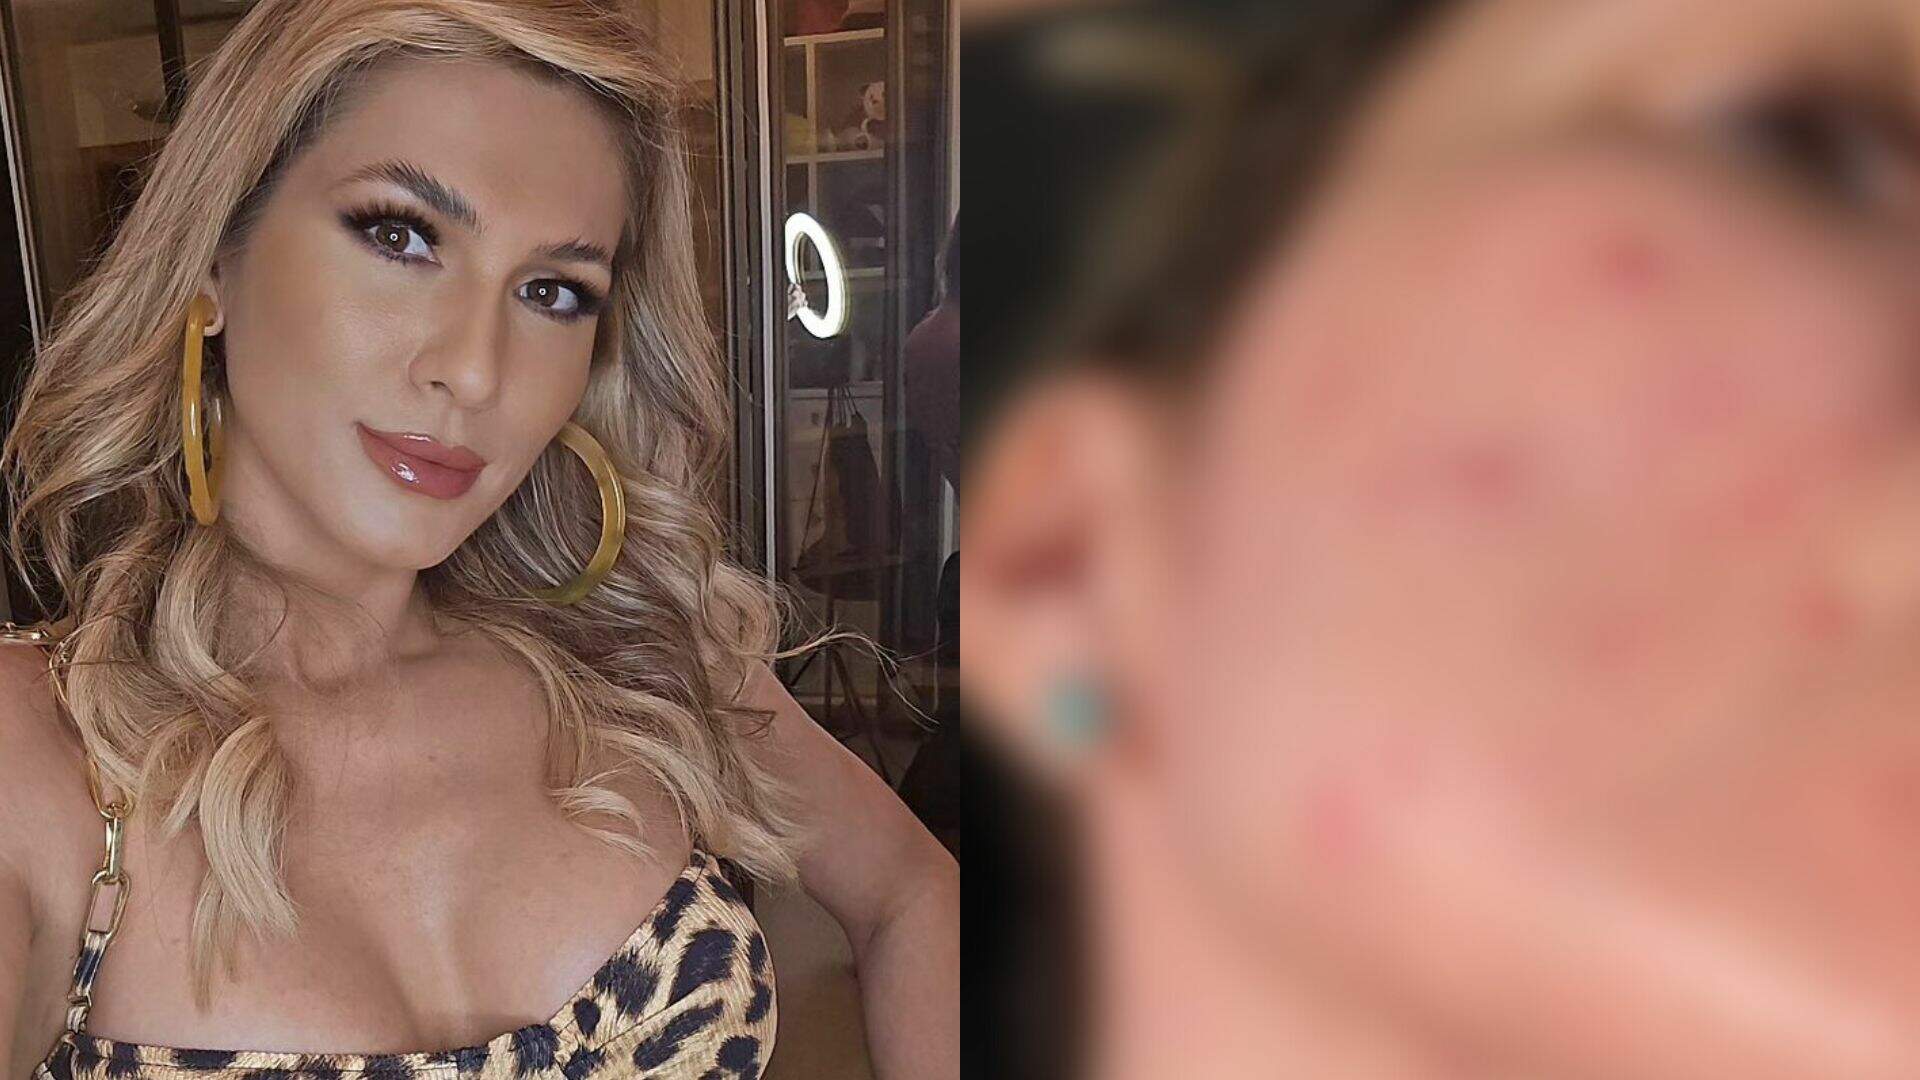 Vida real! Lívia Andrade mostra crise de rosácea na pele durante as gravações - Metropolitana FM